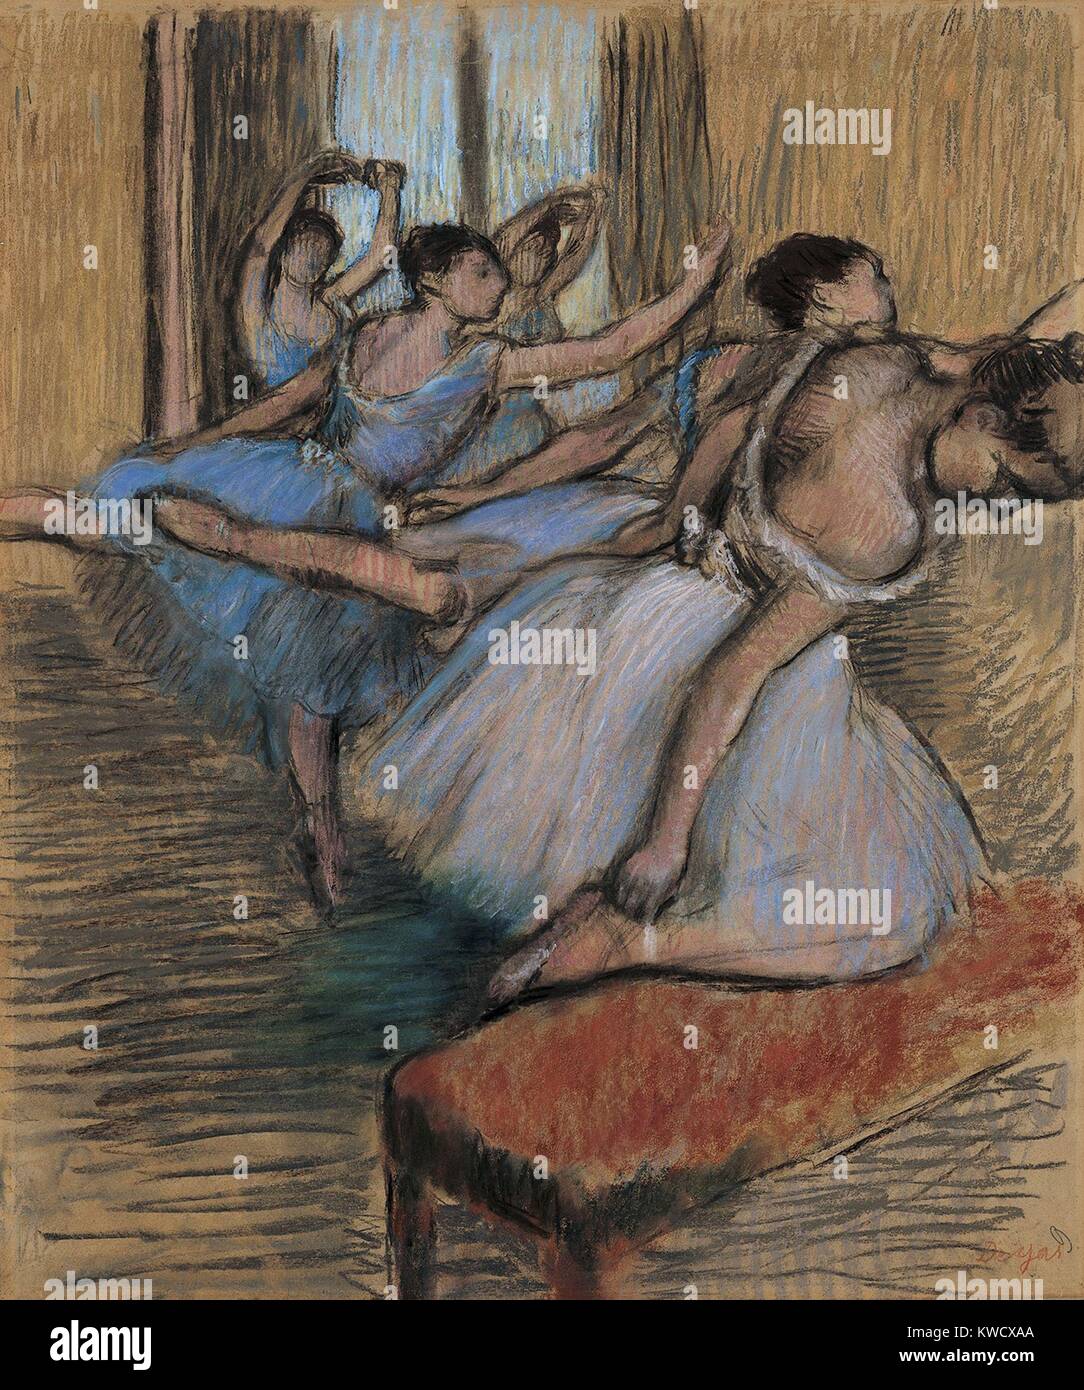 Les danseurs, par Edgar Degas, 1900, dessin impressionnistes français, pastel et fusain sur papier. Degas a dit à un marchand d'art Ambroise Vollard, pour moi la danse est un prétexte pour peindre de jolis costumes et de rendu (BSLOC 2017 Mouvement 3 111) Banque D'Images